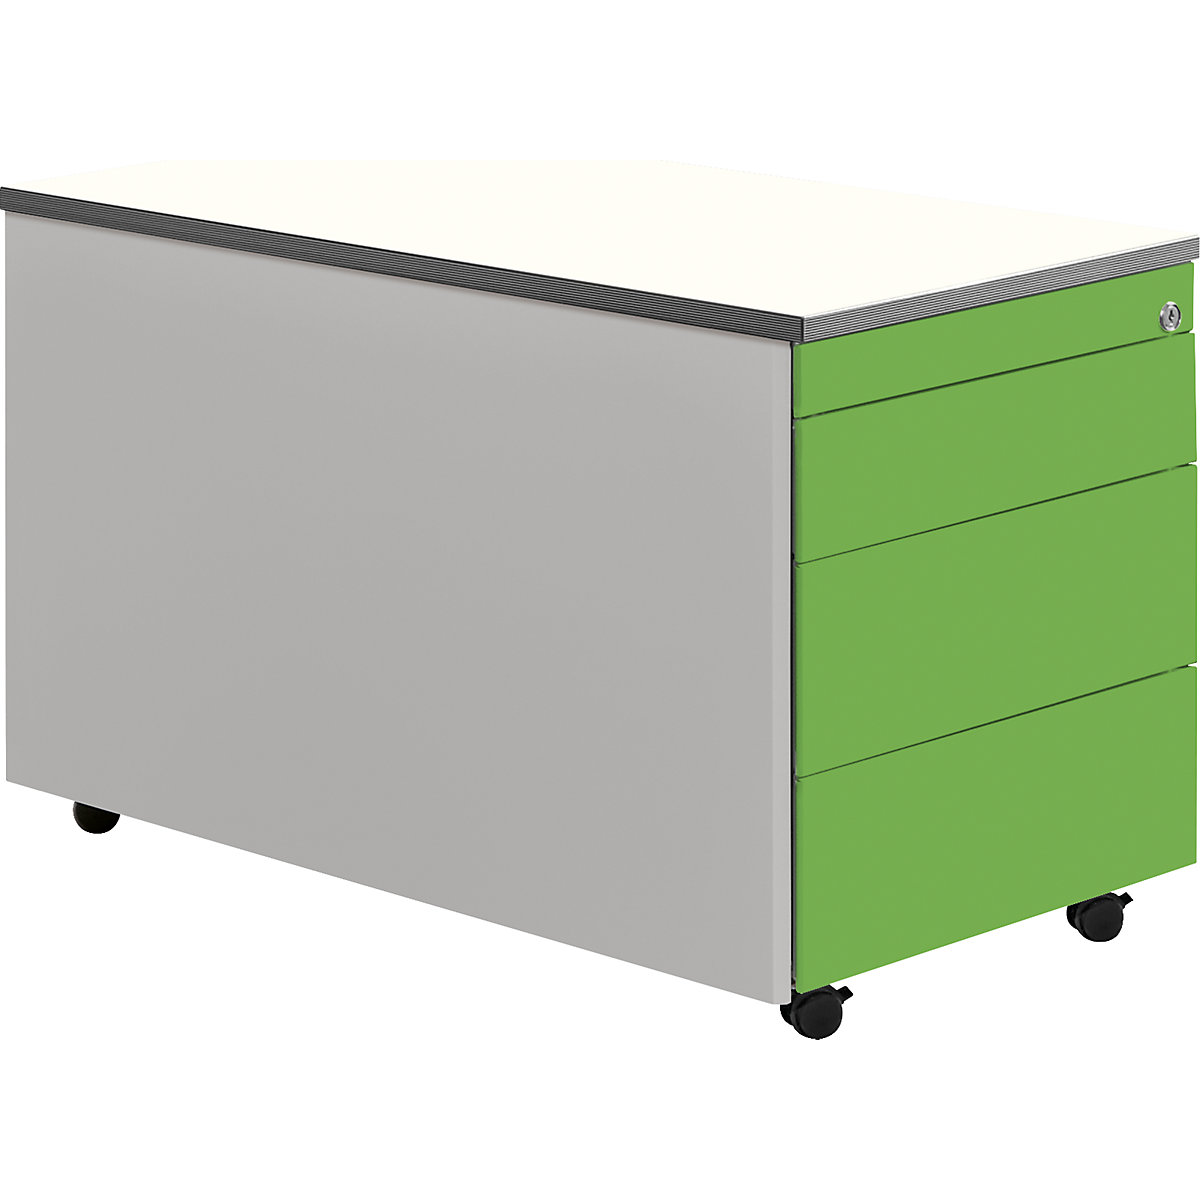 Casetieră cu sertare cu role – mauser, î. x ad. 529 x 800 mm, blat din plastic, 3 sertare, alb aluminiu / verde gălbui / alb